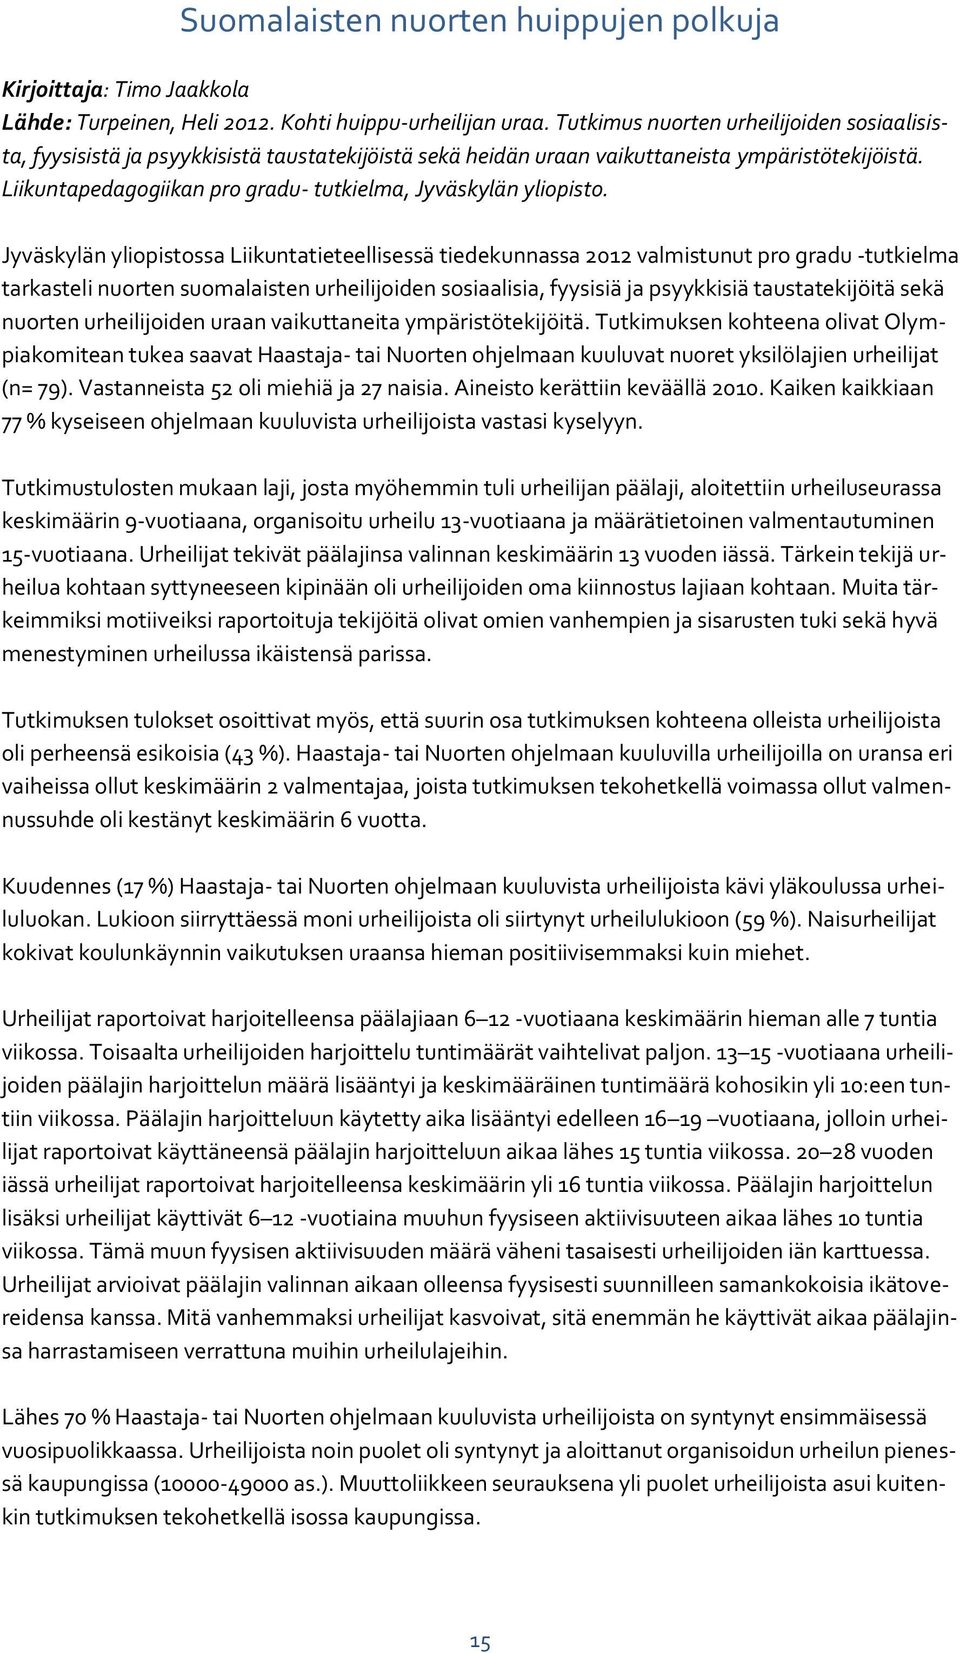 Liikuntapedagogiikan pro gradu- tutkielma, Jyväskylän yliopisto.